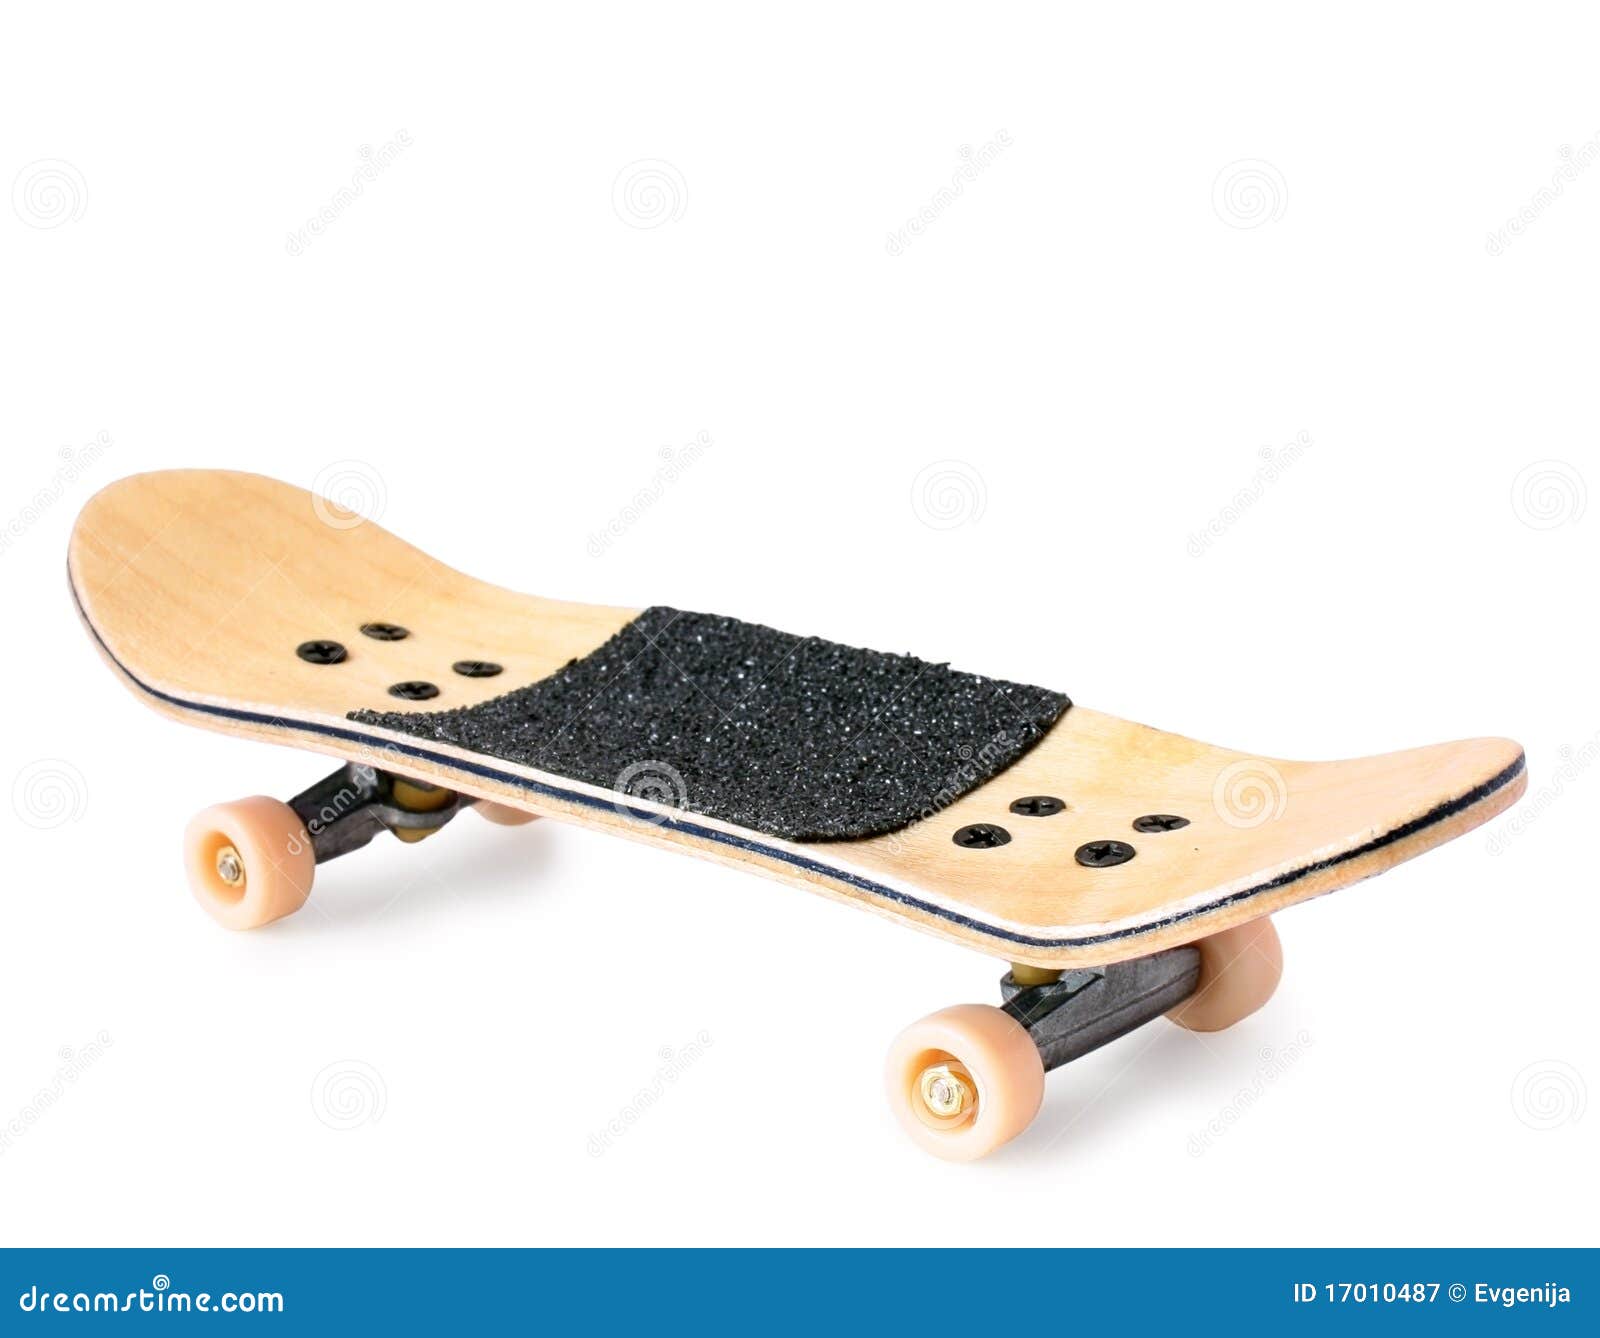 wooden fingerboard